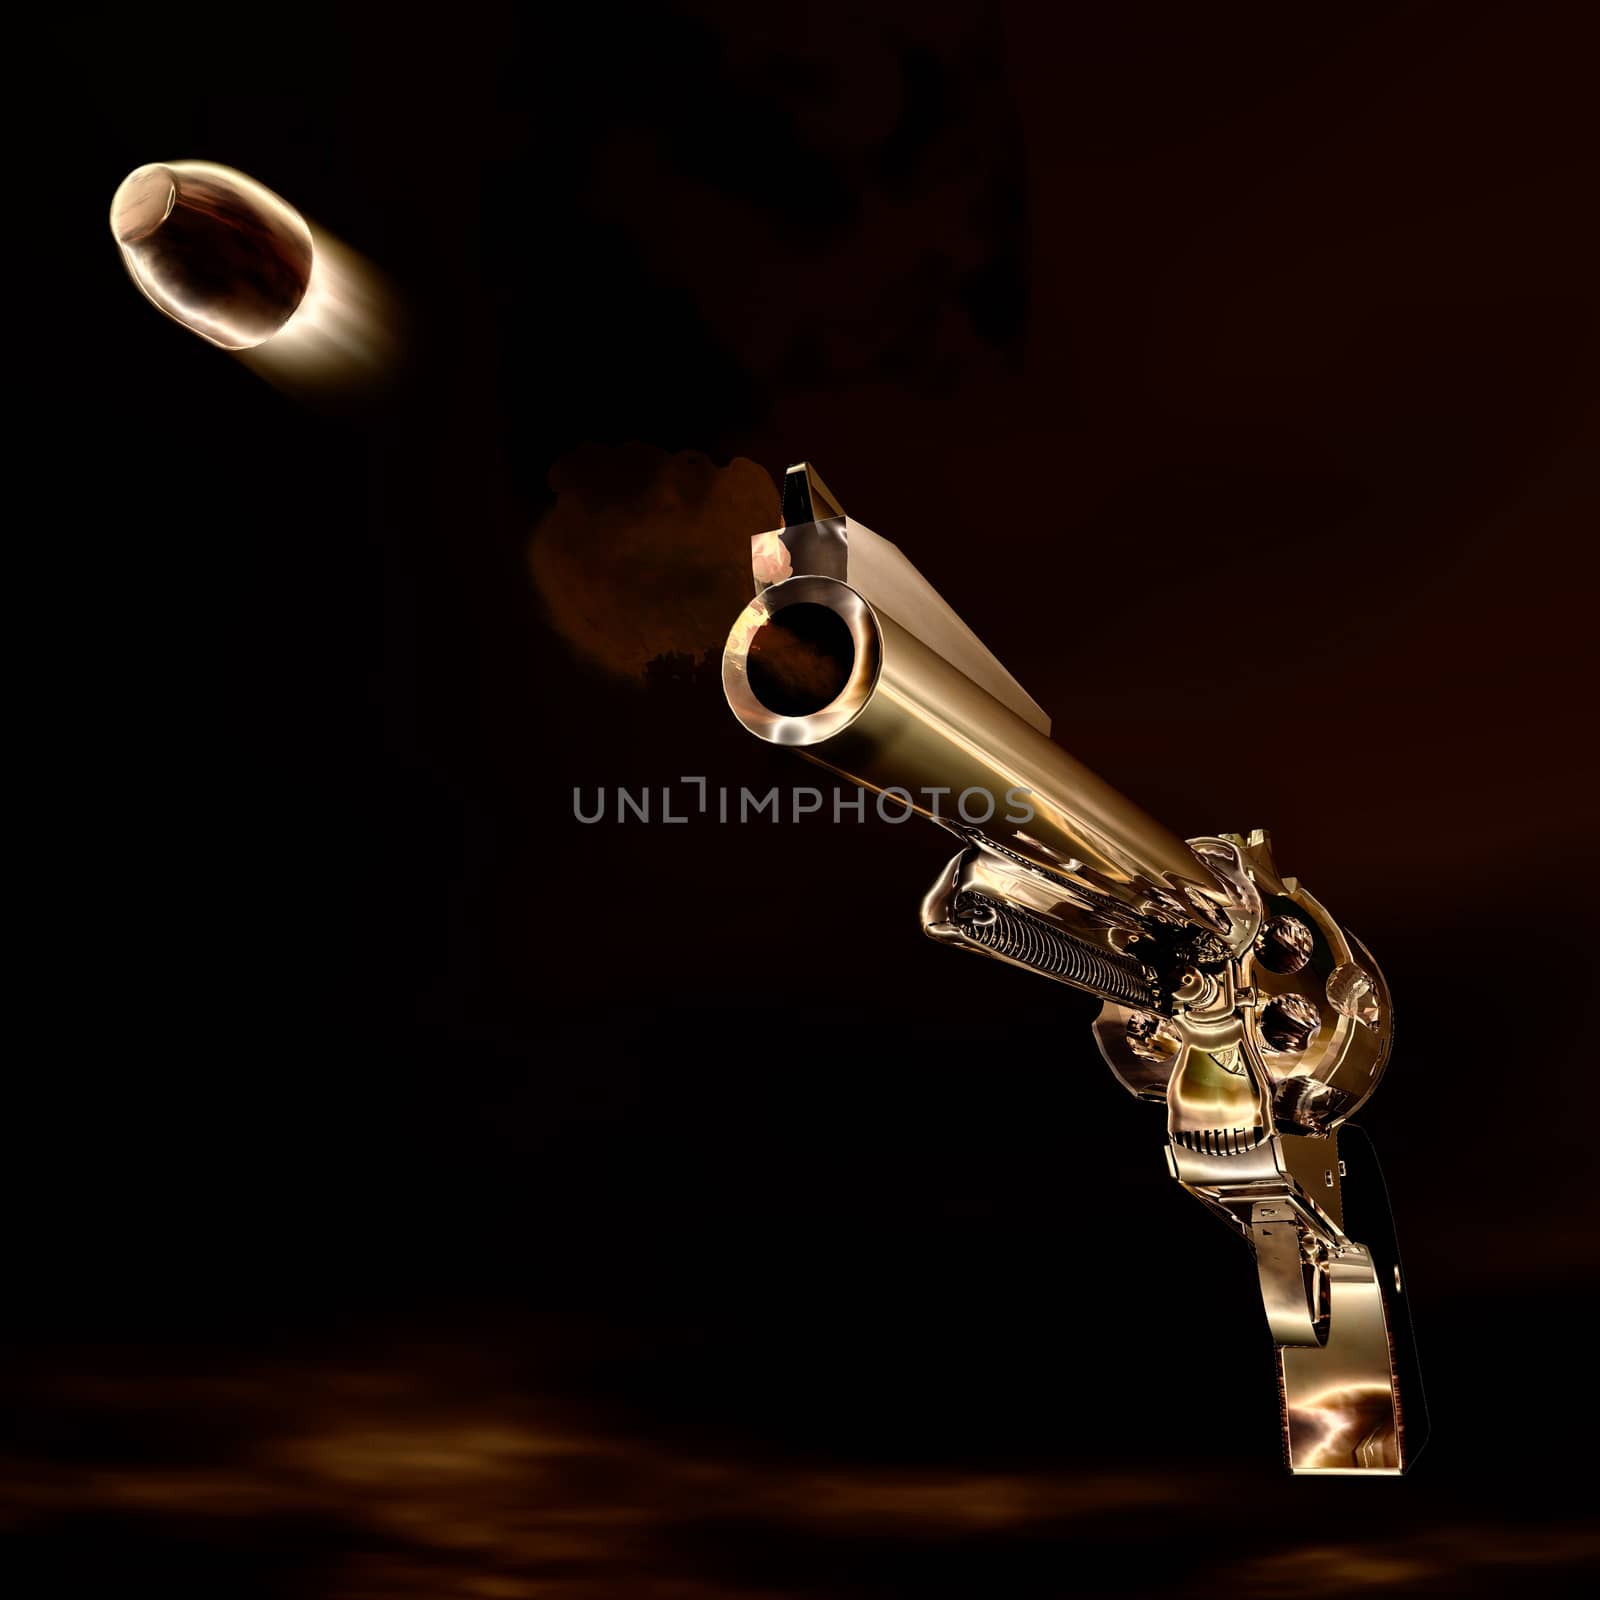 Digital Illustration of a Revolver